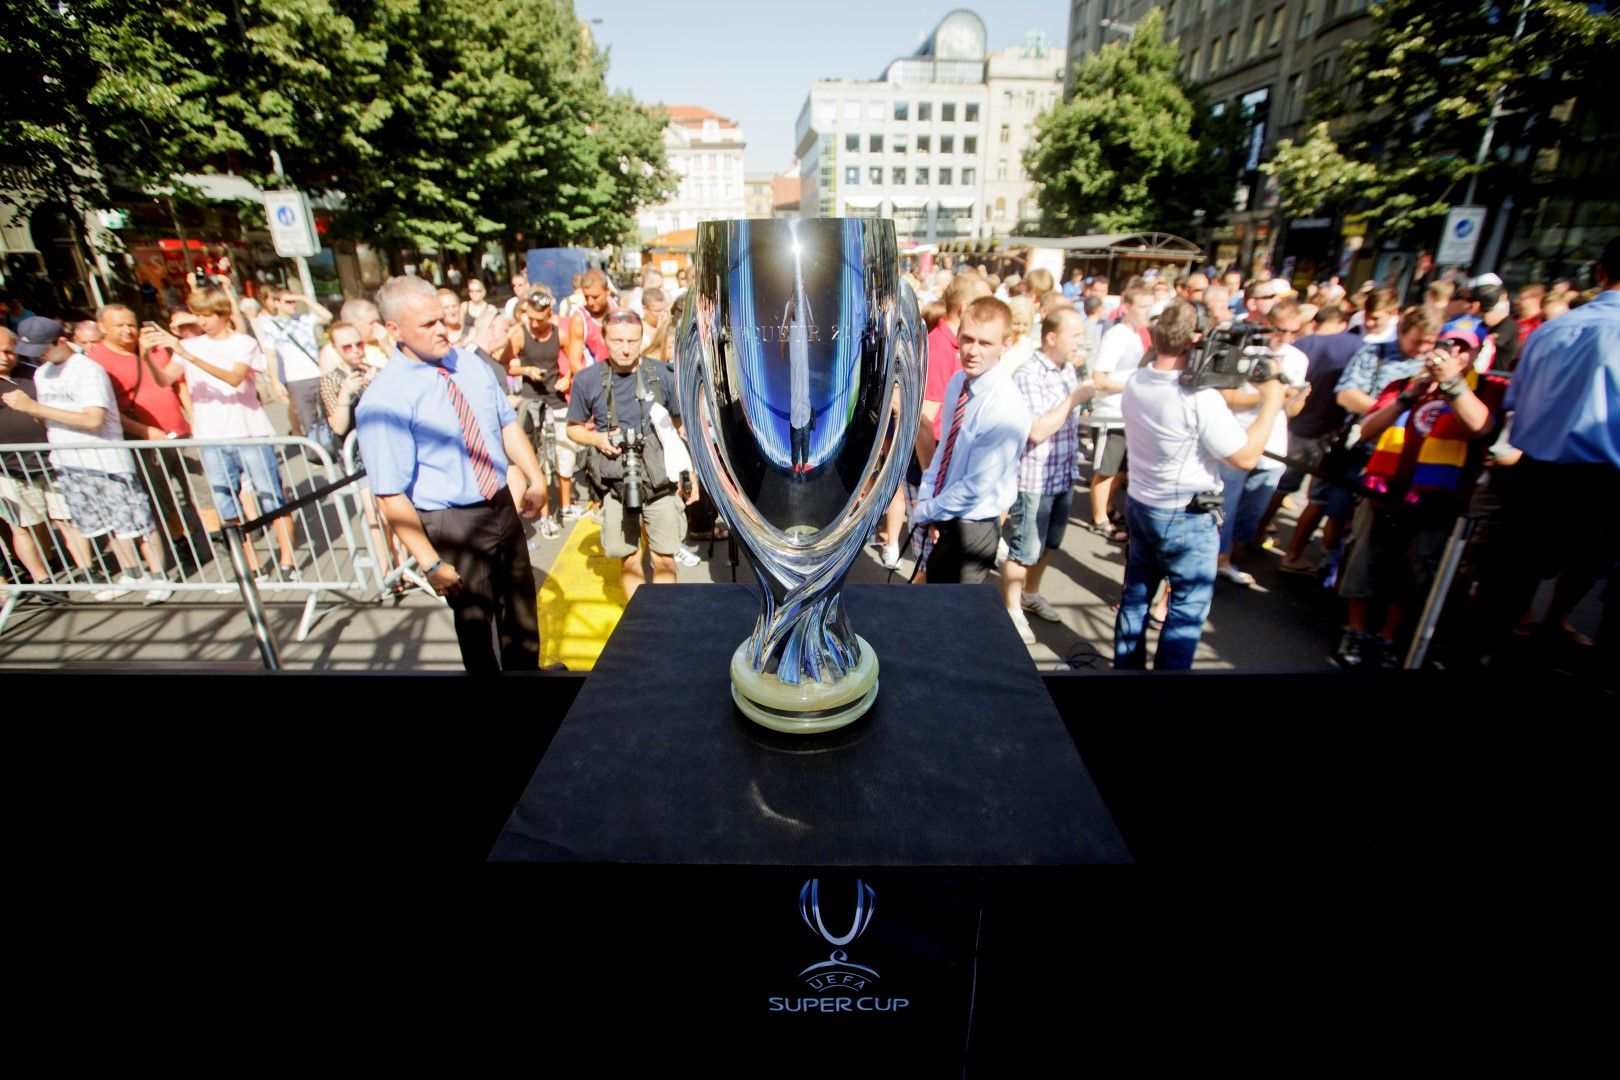 2013 г. - Трофеят е в Прага, посрещнат от хиляди фенове. Финалът се премести за първи път извън Княжество Монако след 15 финала на стадион "Луи II".